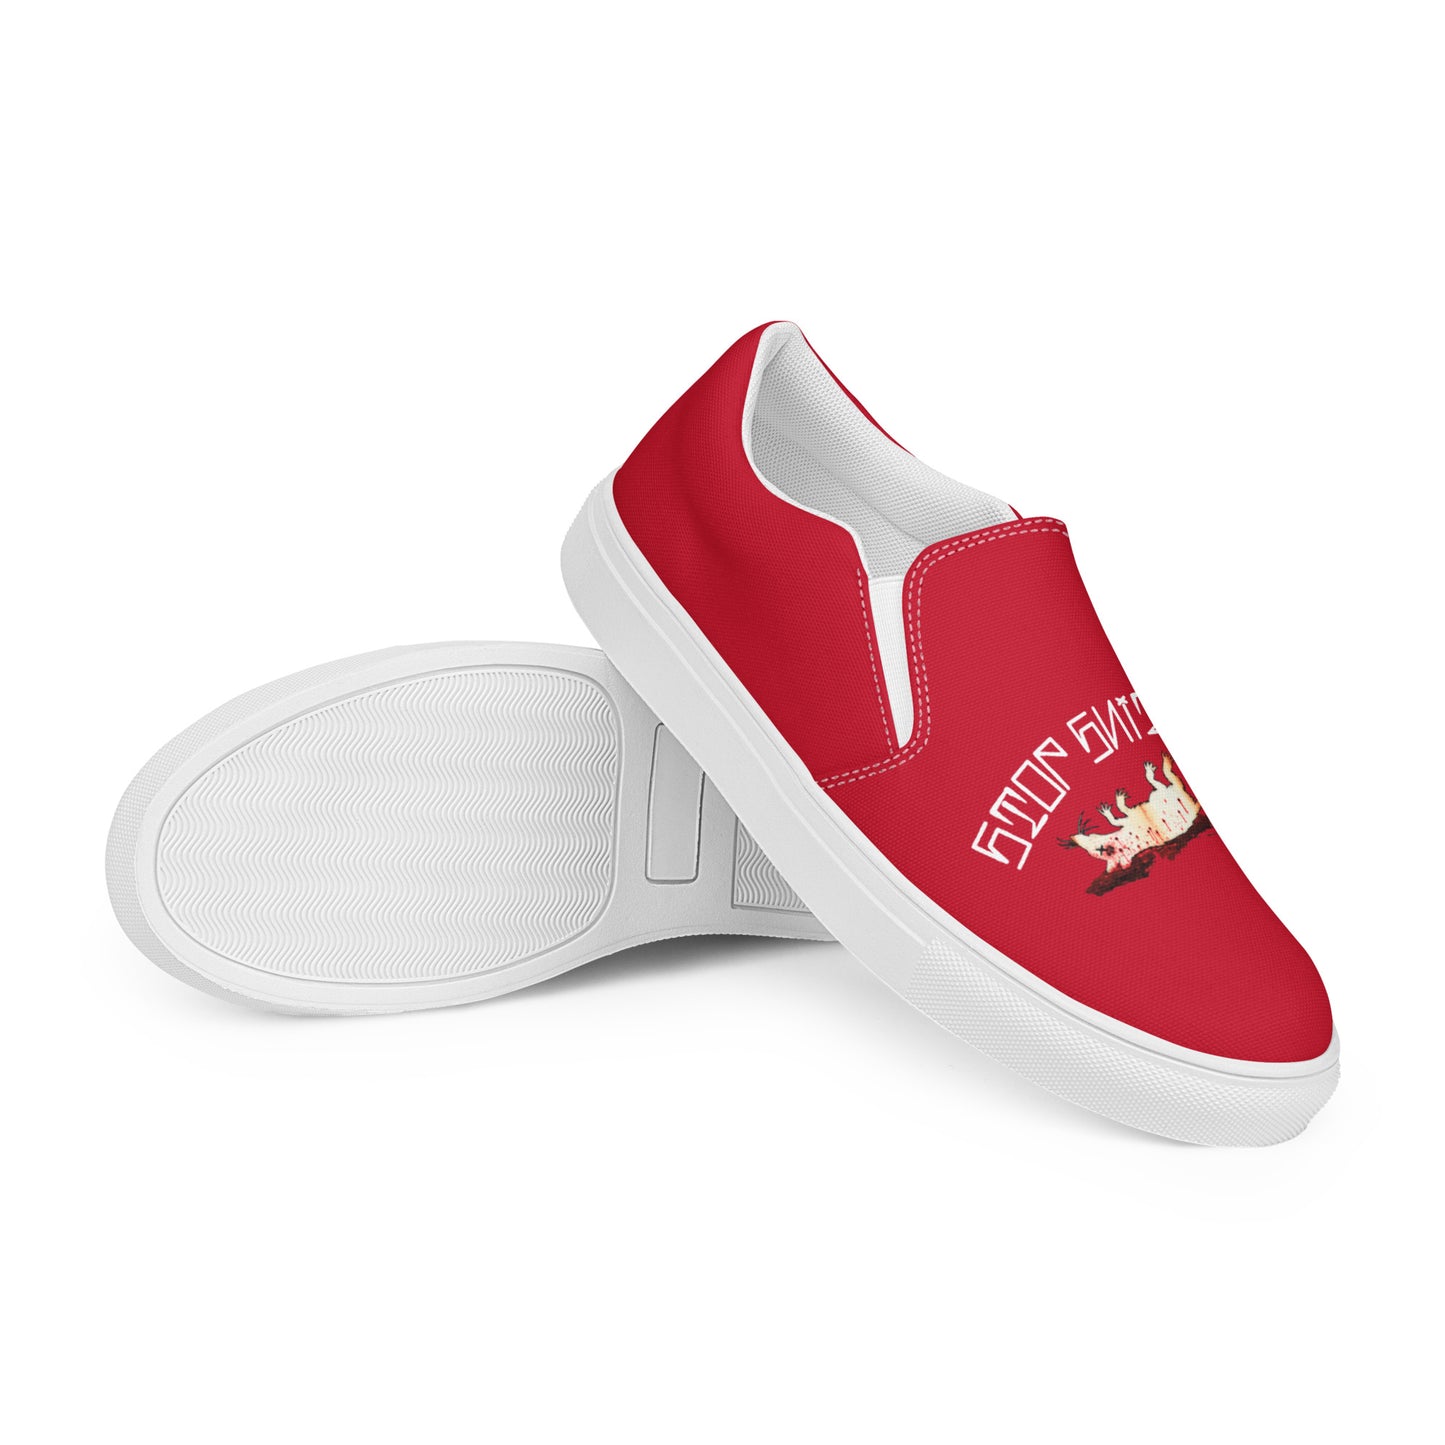 Men’s Fink Red slip-on canvas shoes